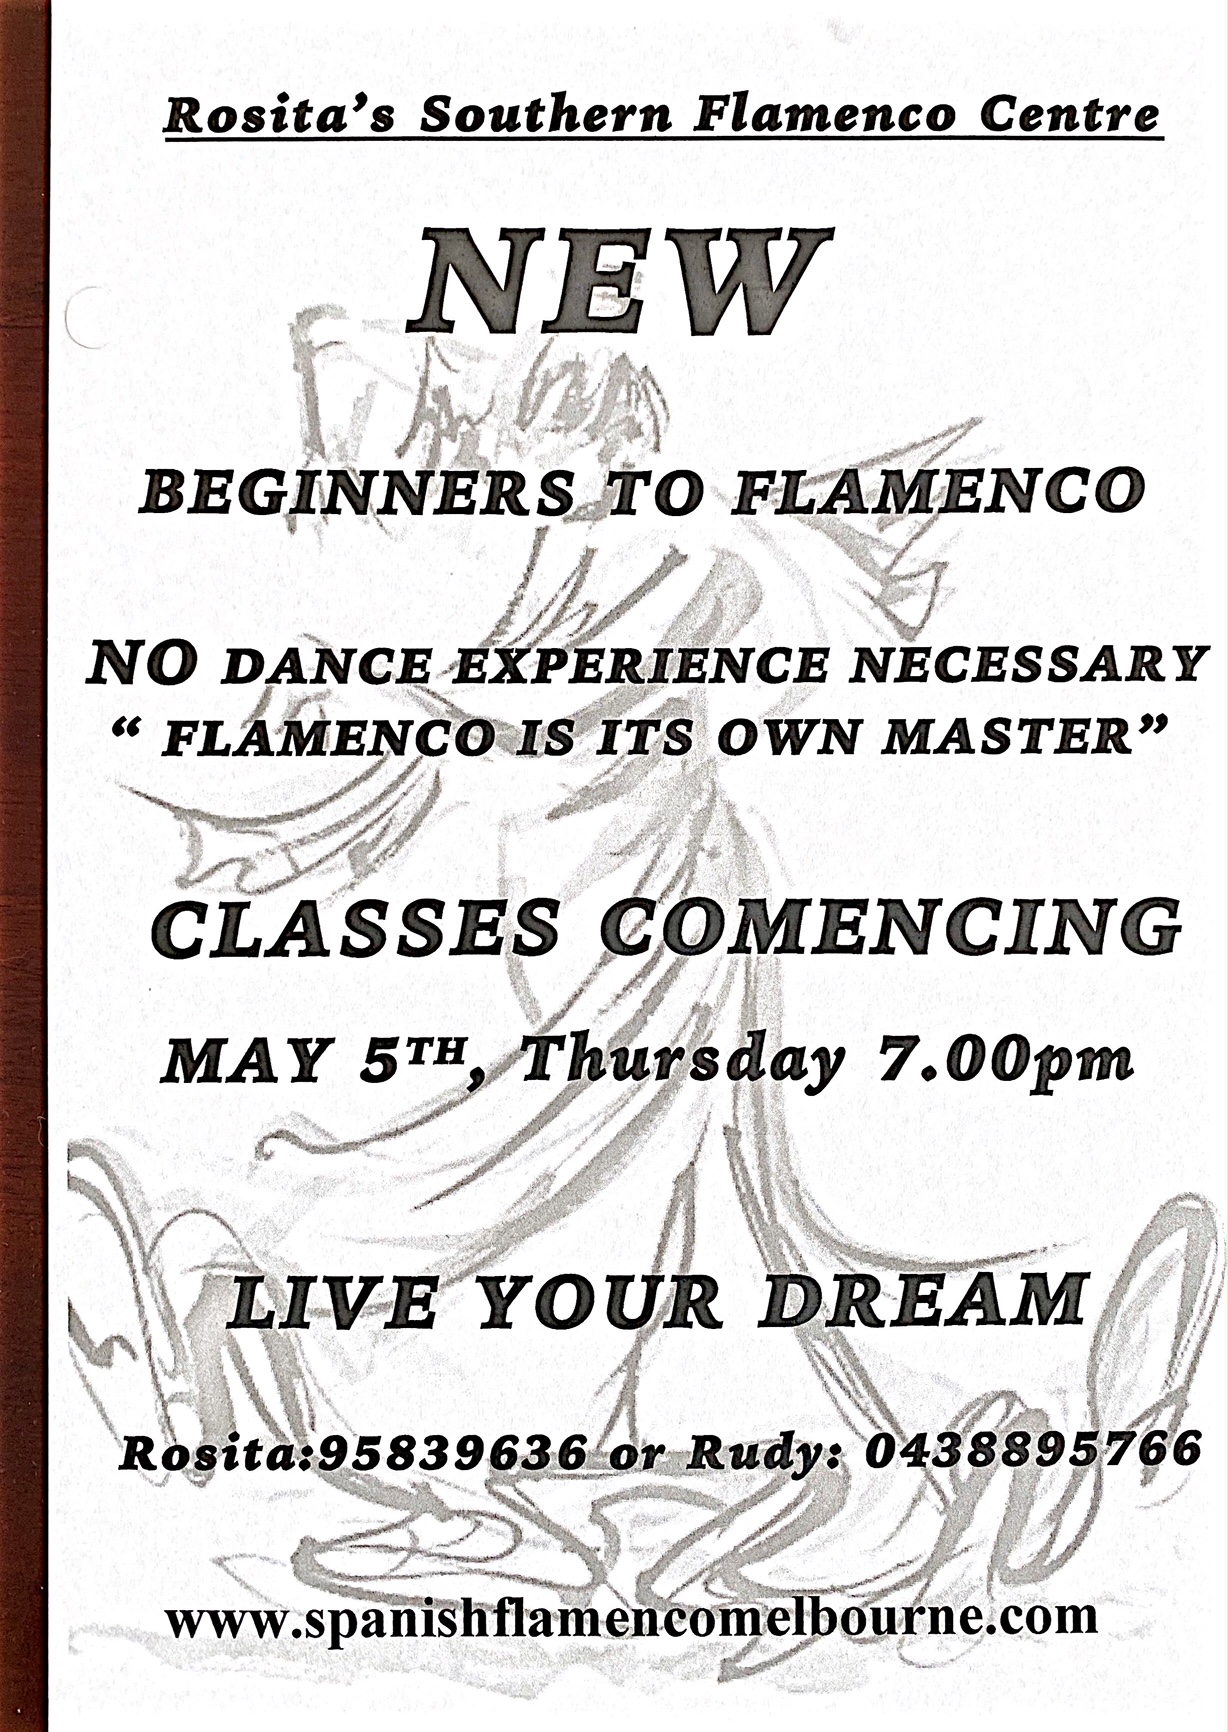 Flamenco classes in Melbourne Spanish flamenco centre